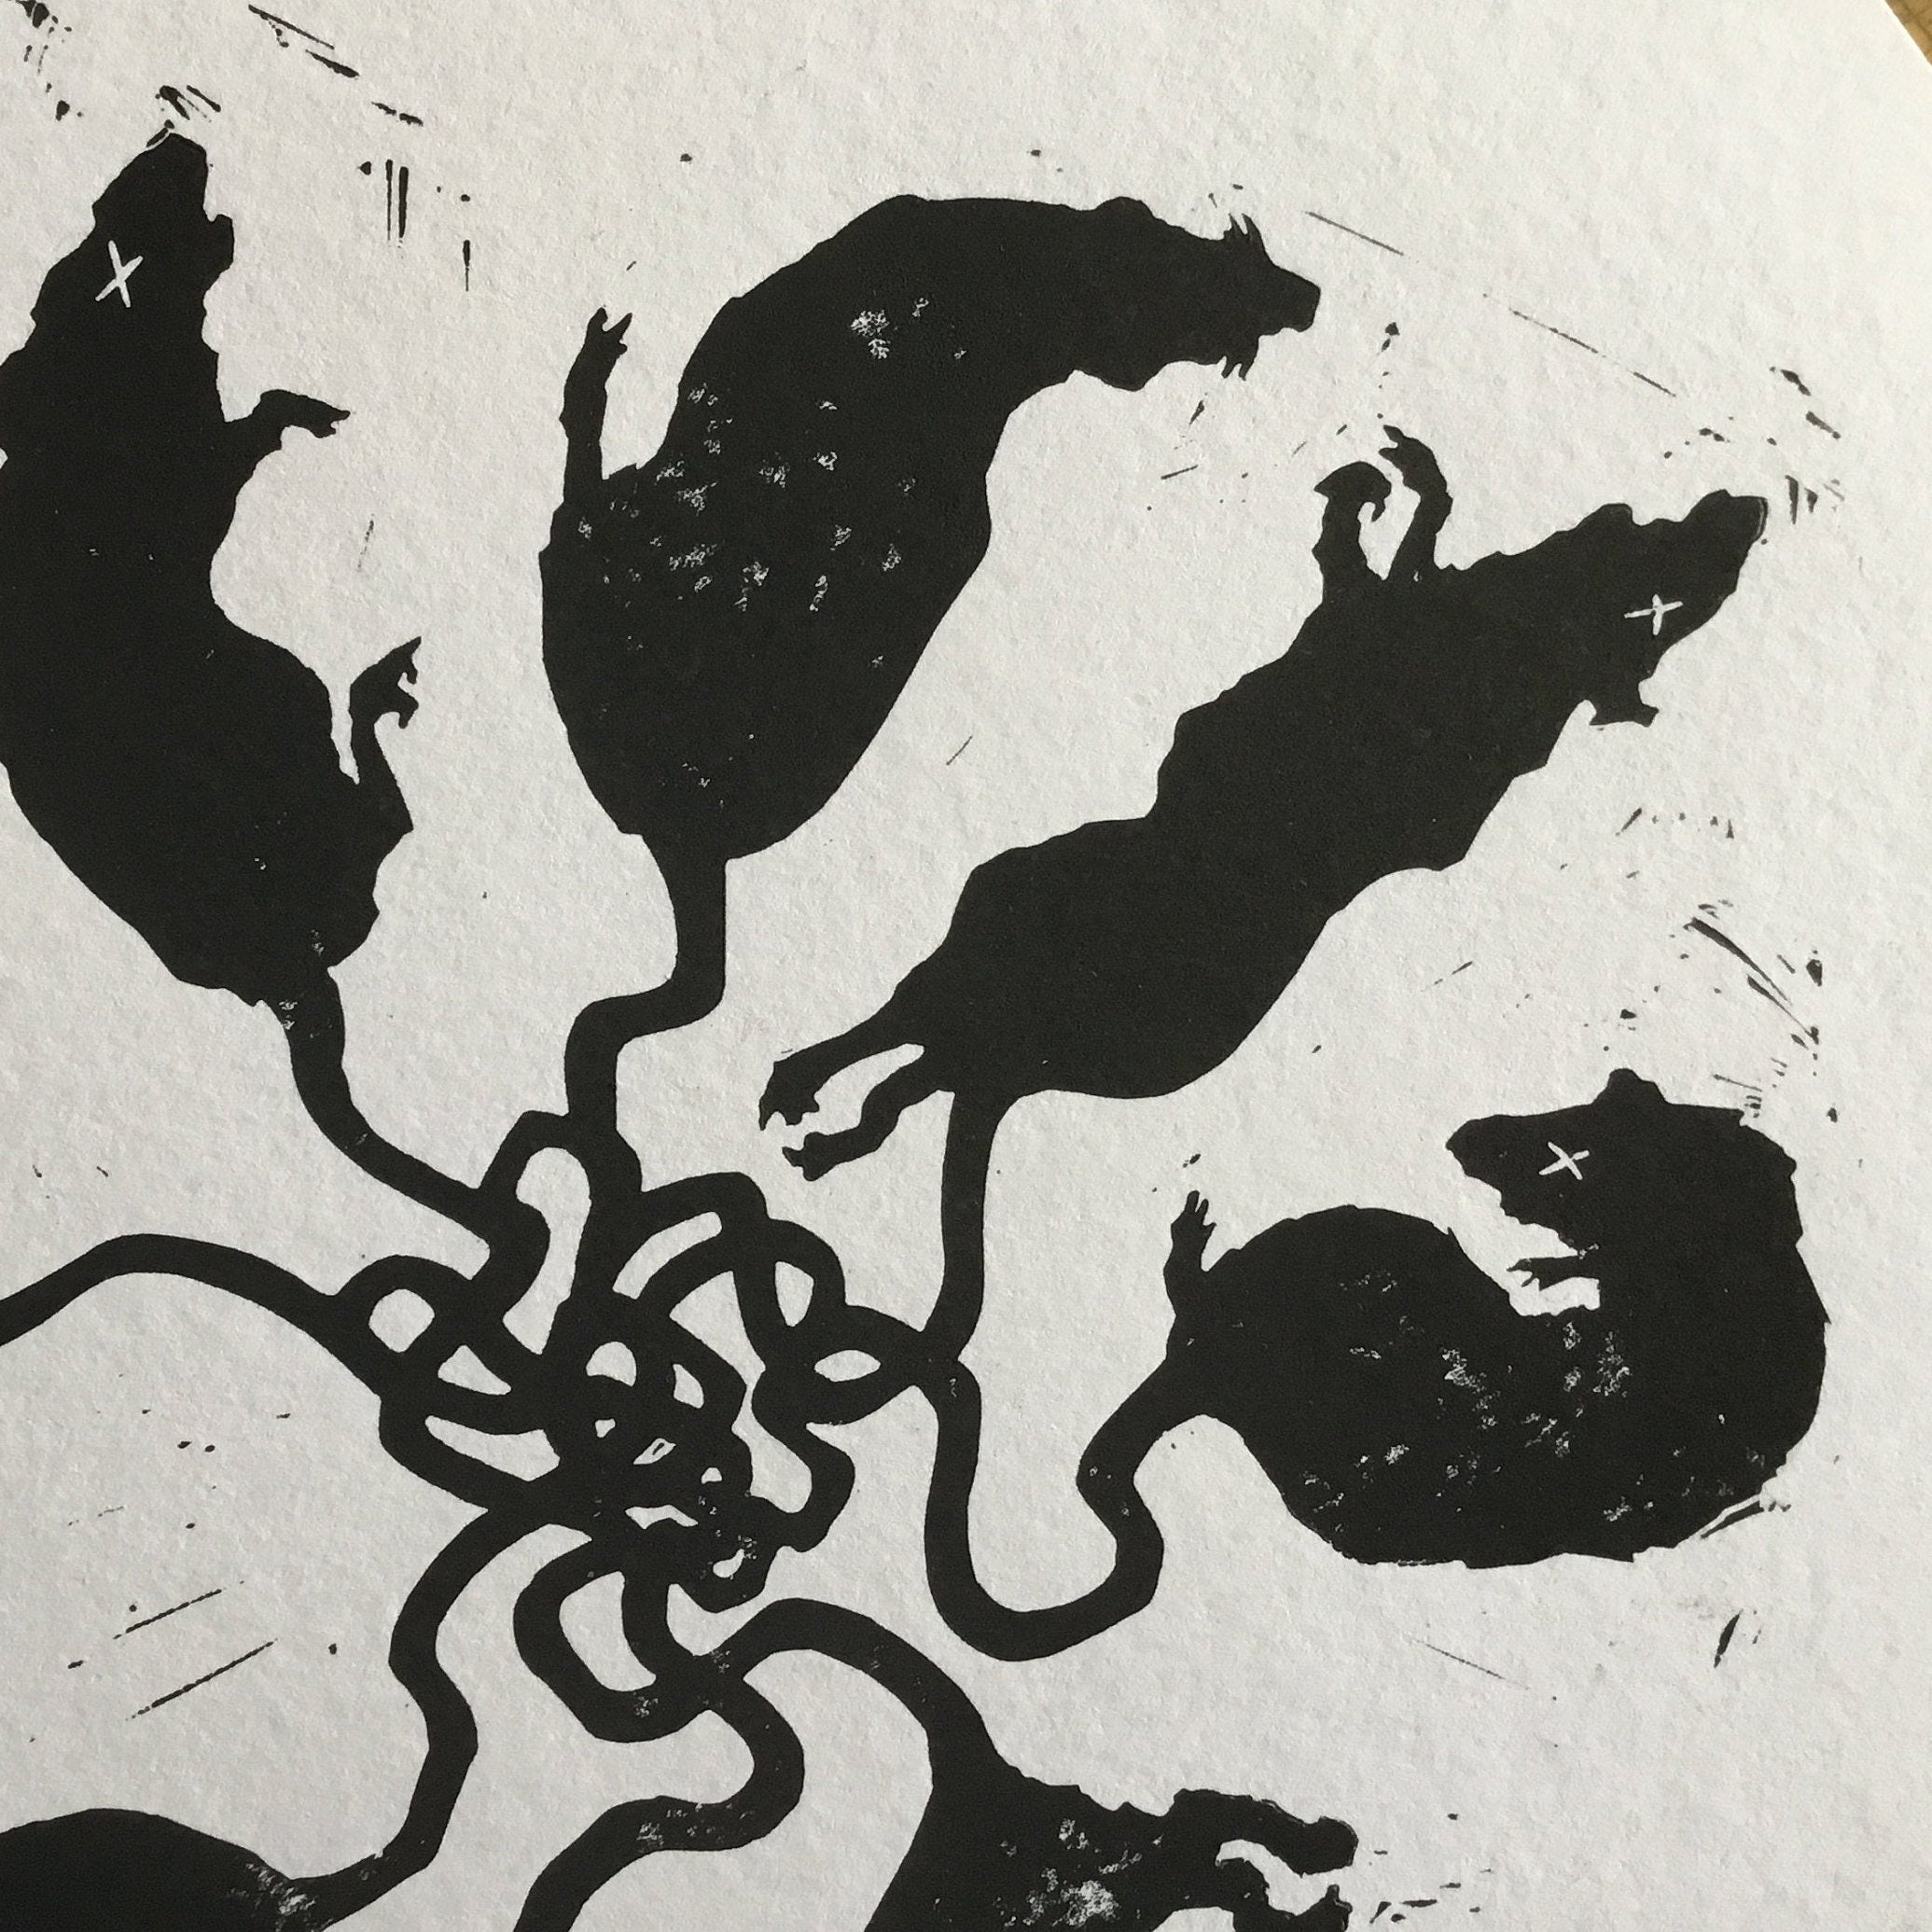 Rat King Lino Print / King Rat / Morbid Art 